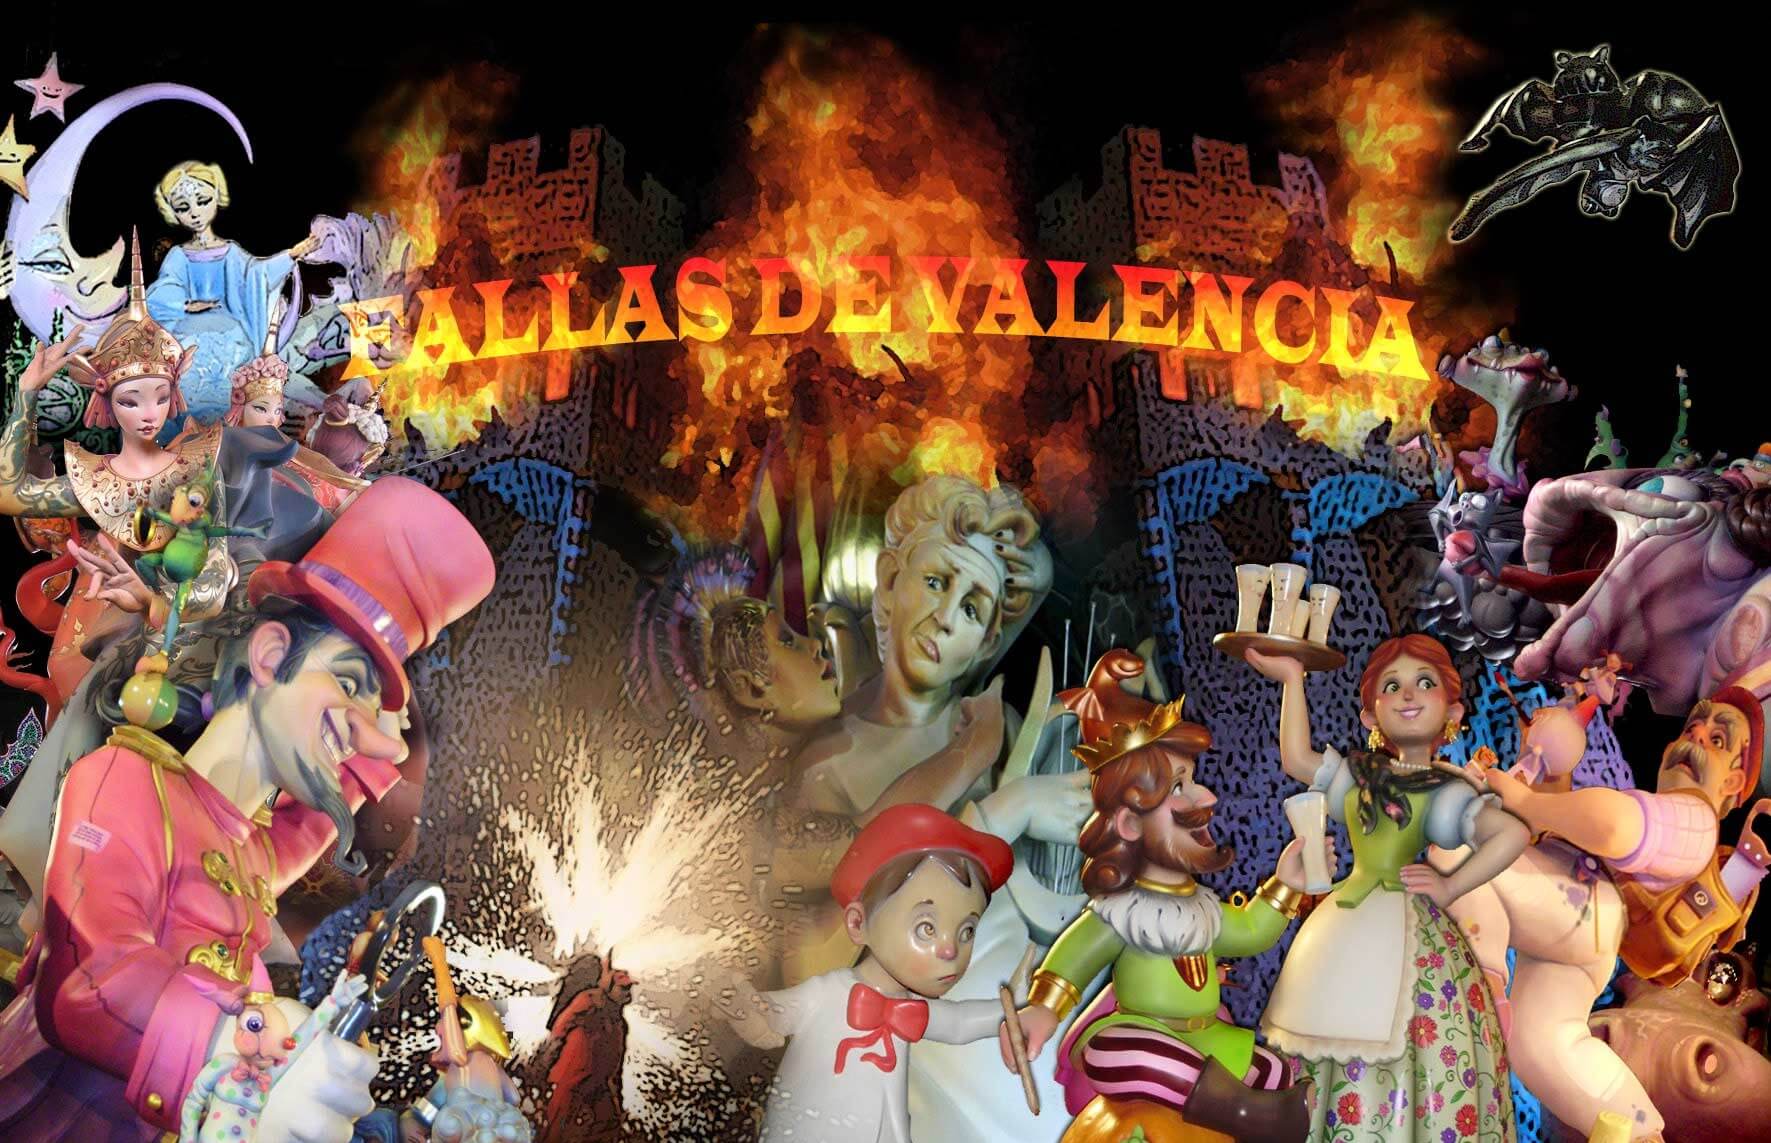 Подготовка к празднику Лас Фальяс Las Fallas 2017 идёт полным ходом, что вовсю ощущается в городе Валенсия в Испании и скоро на площади Мэрии начнётся масклета